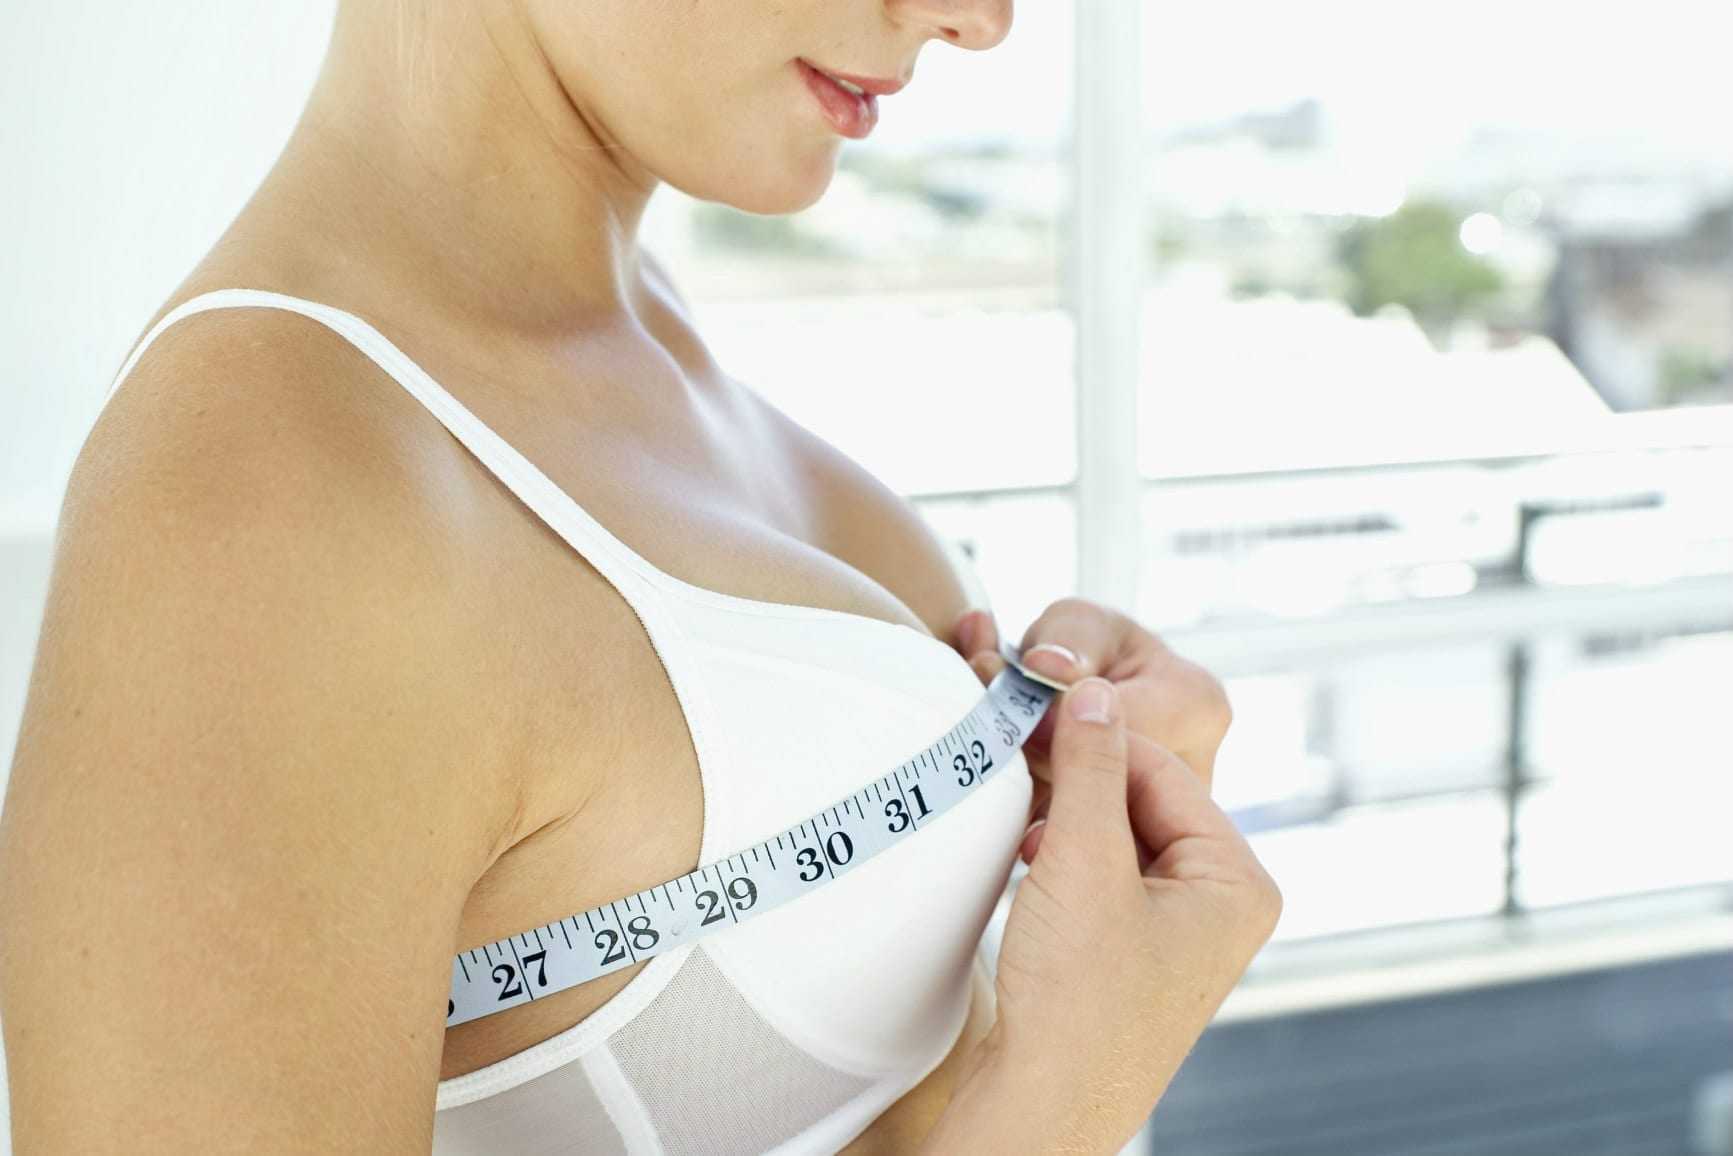 Крем Upsize – популярный и противоречивый продукт Работают ли средства для увеличения груди Возможно ли изменение размера бюста с помощью косметики Каковы реальные отзывы